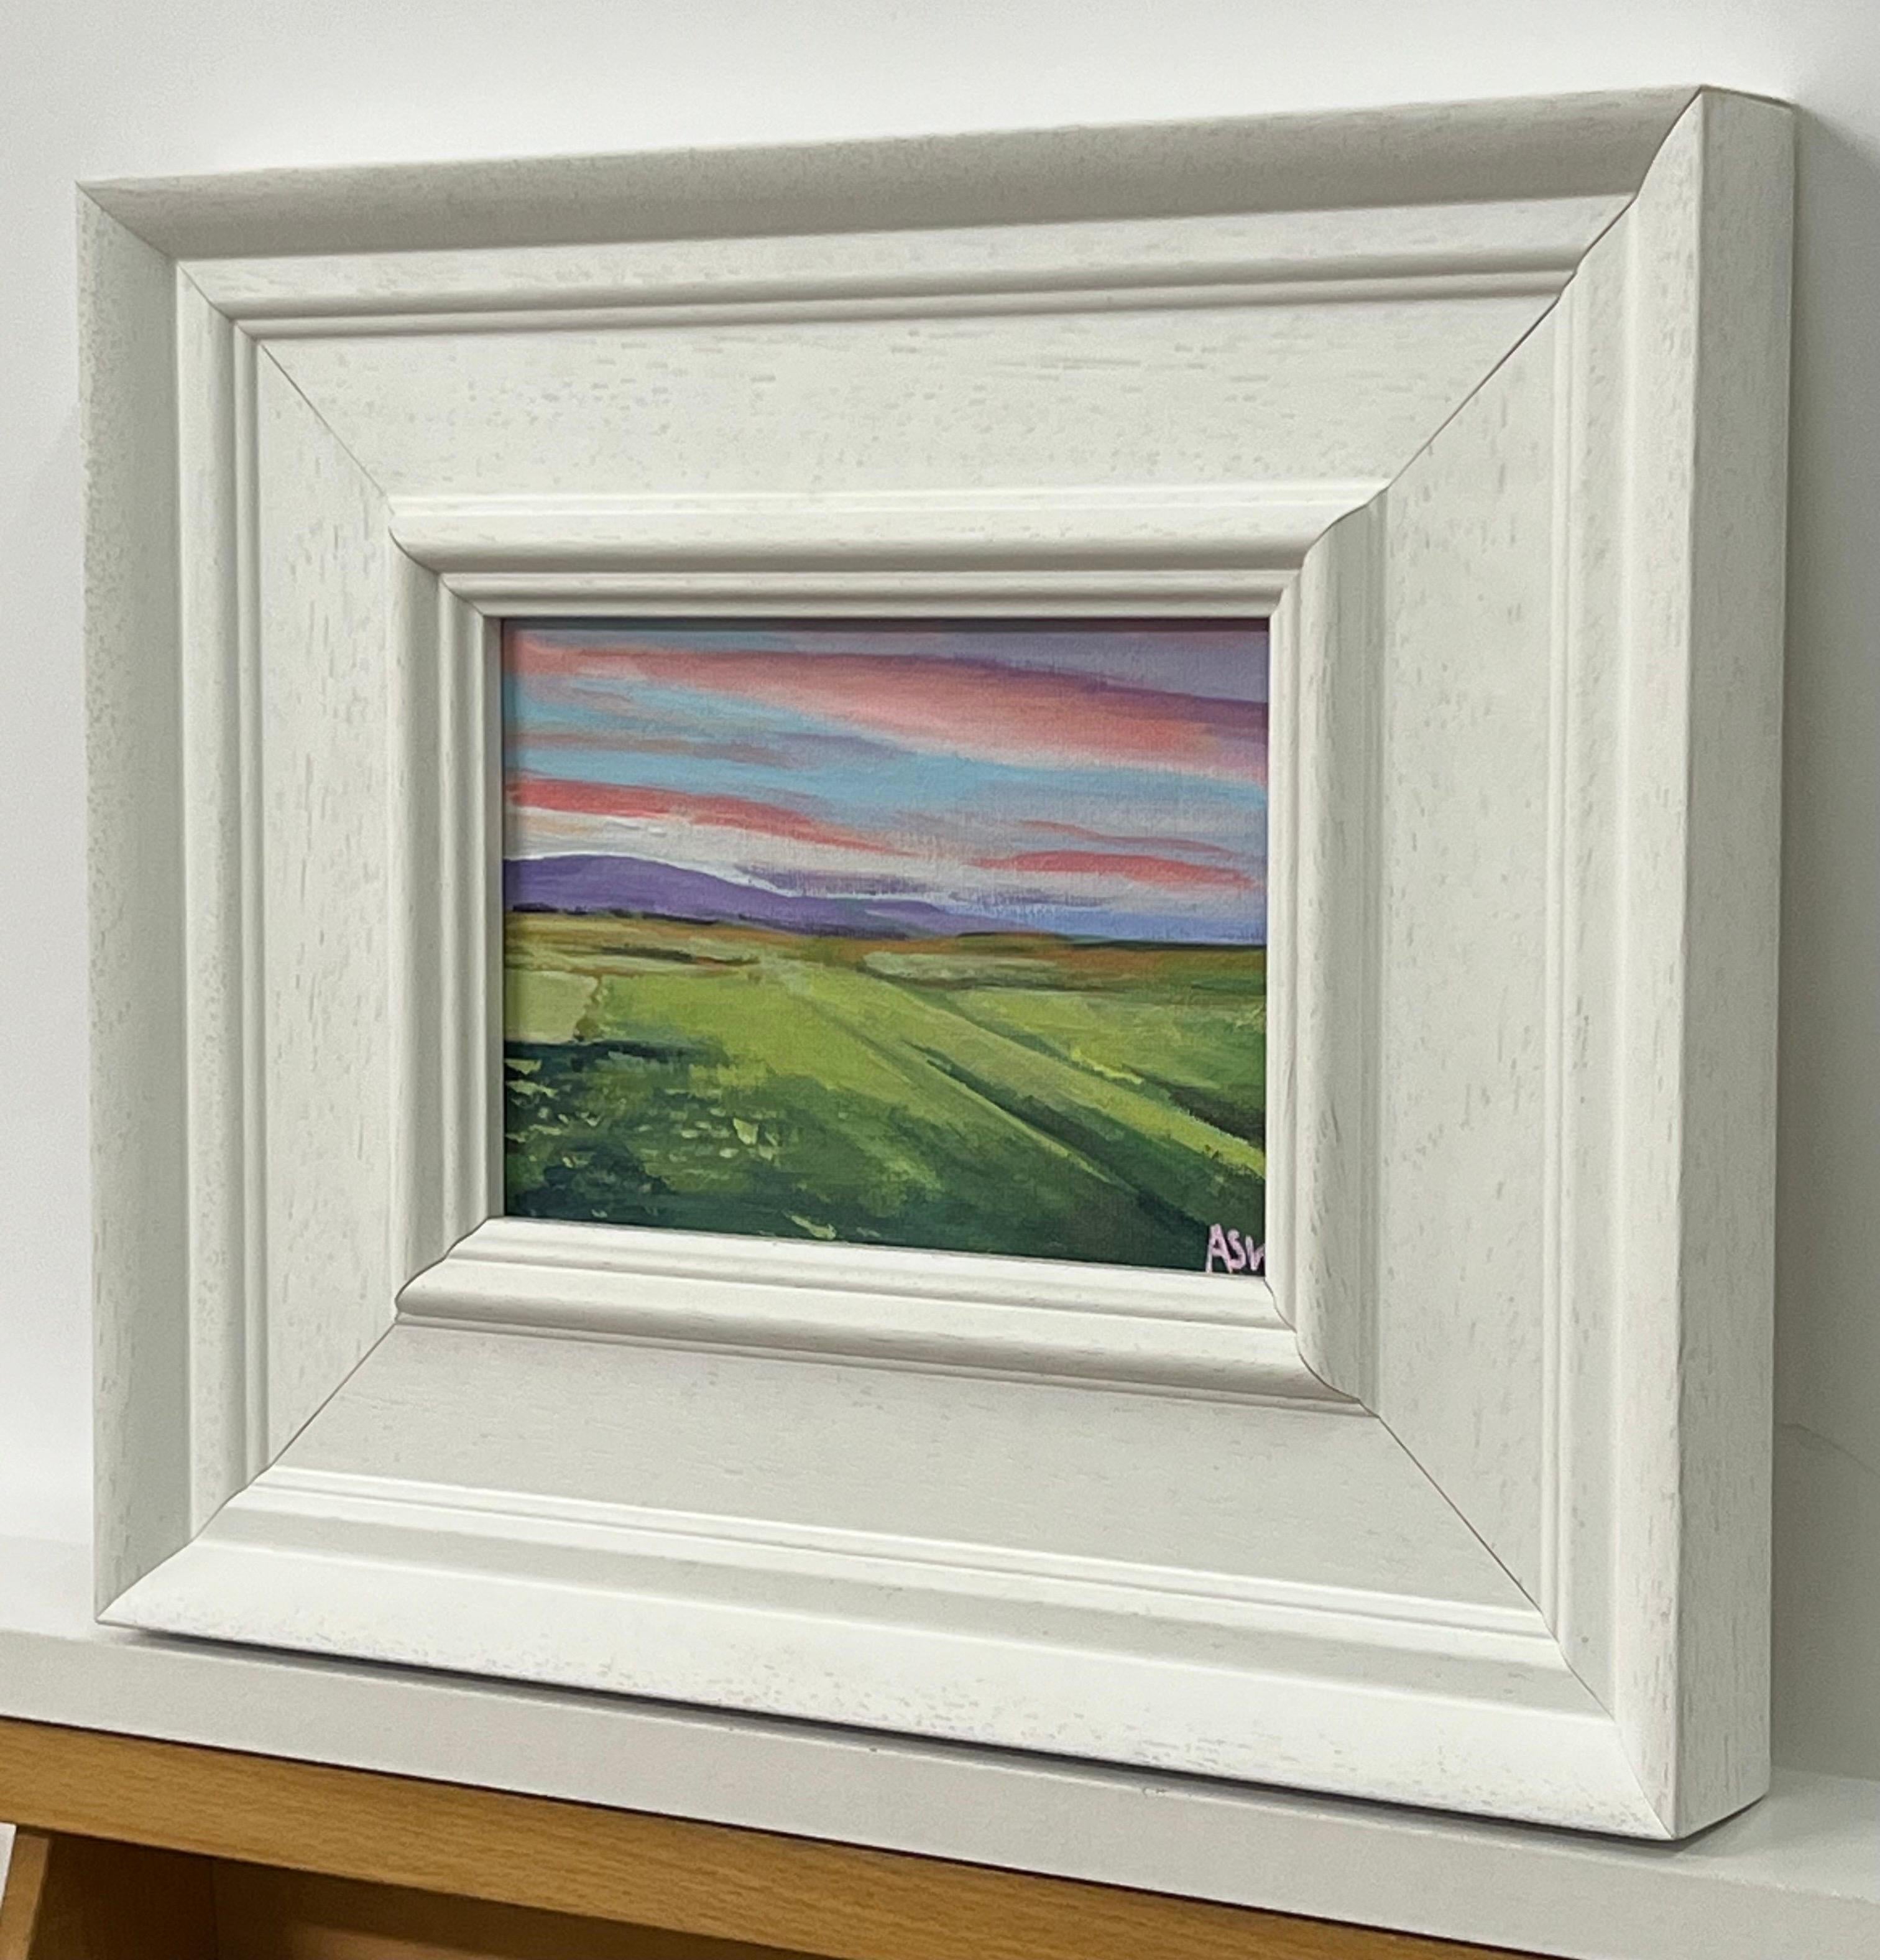 Paysage miniature de la côte est des Highlands écossais par l'artiste britannique contemporaine Angela Wakefield. Plage de Brora, Écosse.

L'œuvre d'art mesure 7 x 5 pouces
Le cadre mesure 12 x 10 pouces

Angela Wakefield a fait deux fois la